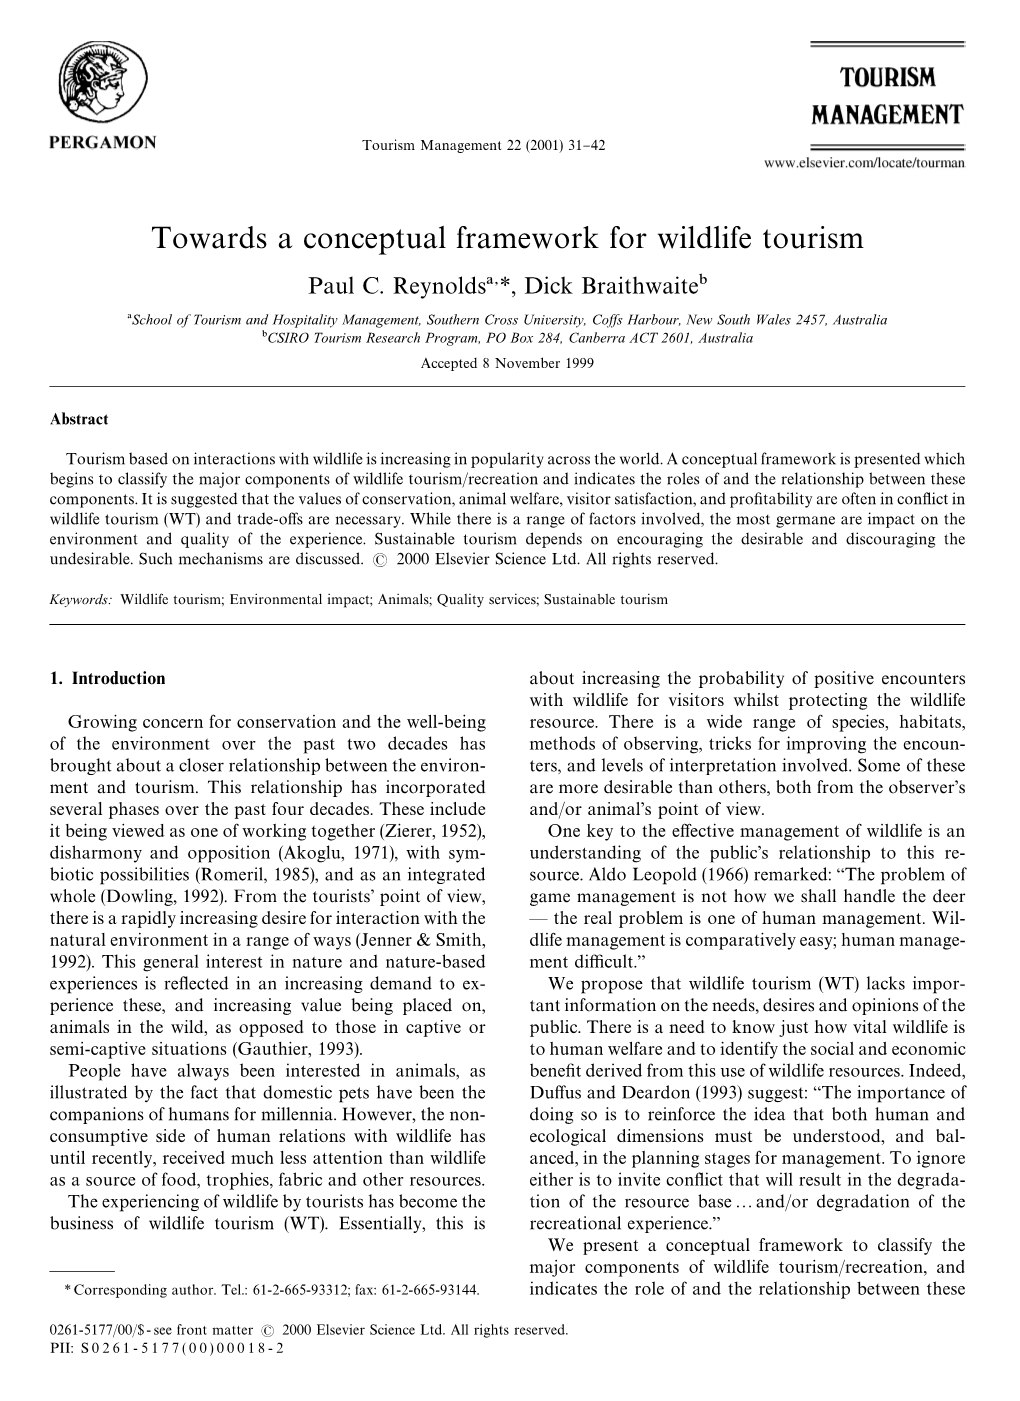 Towards a Conceptual Framework for Wildlife Tourism Paul C